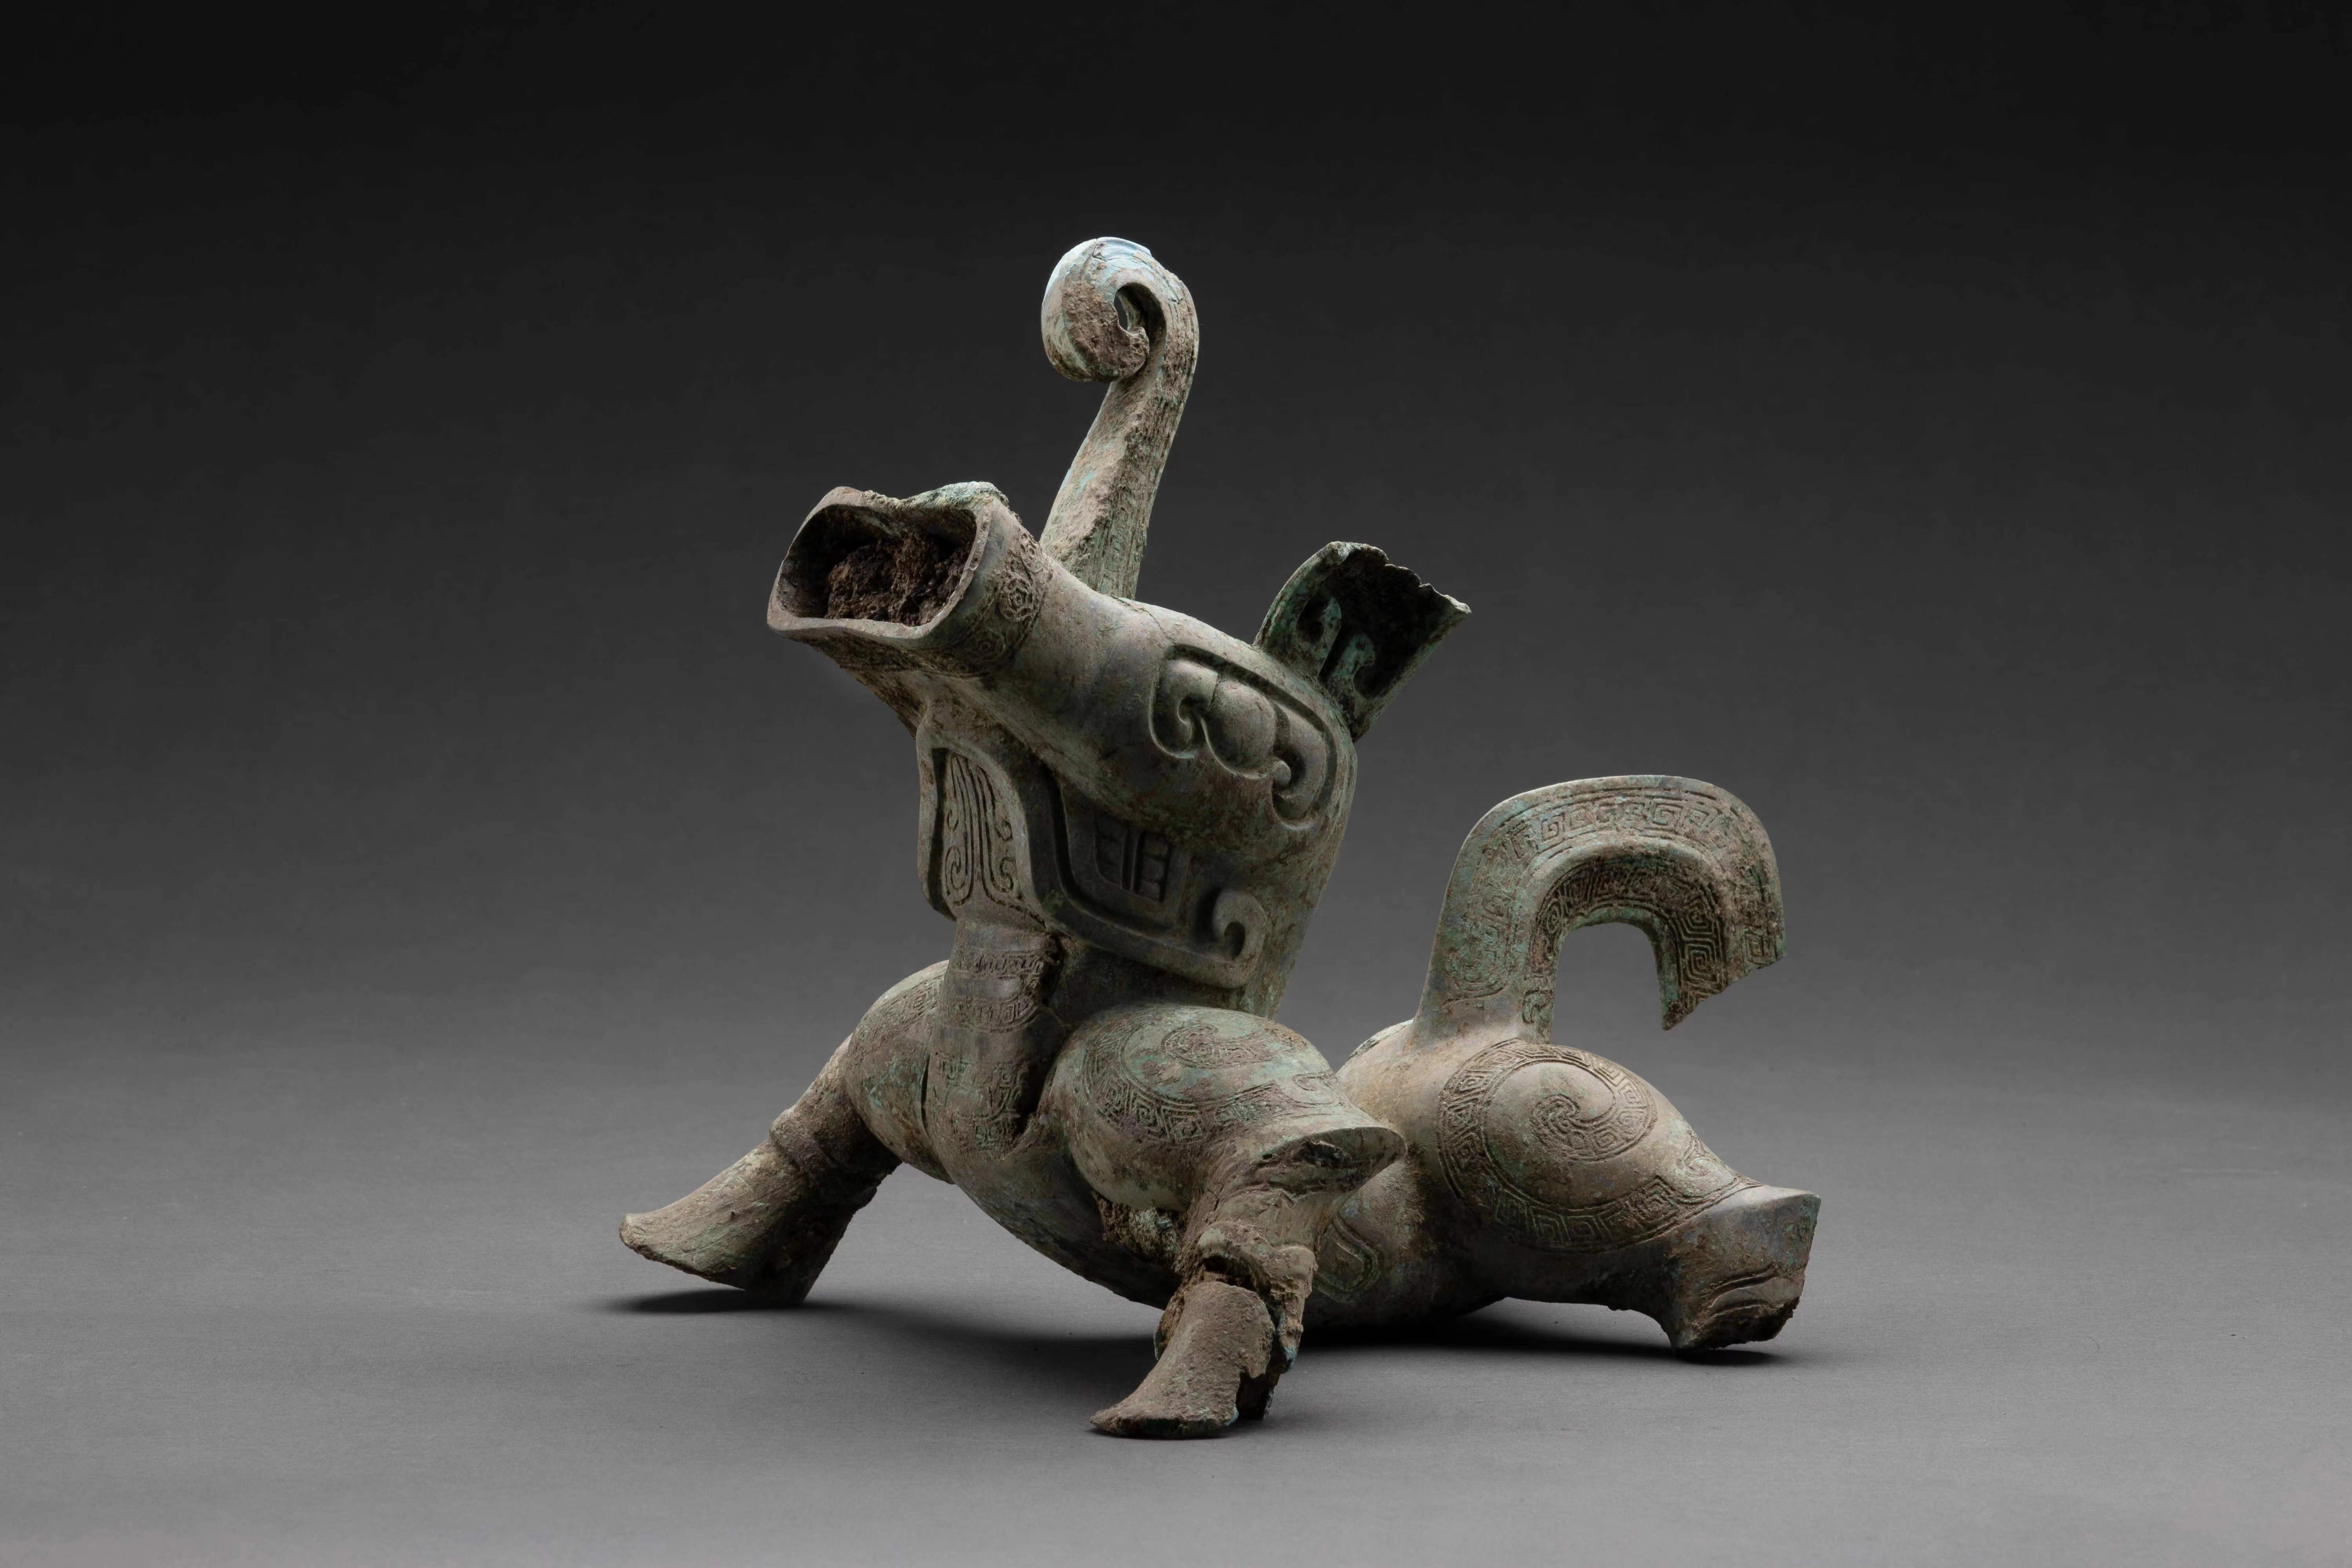 三星堆遺跡出土の青銅神獣、初の一般公開 四川省宜賓市 写真16枚 国際 